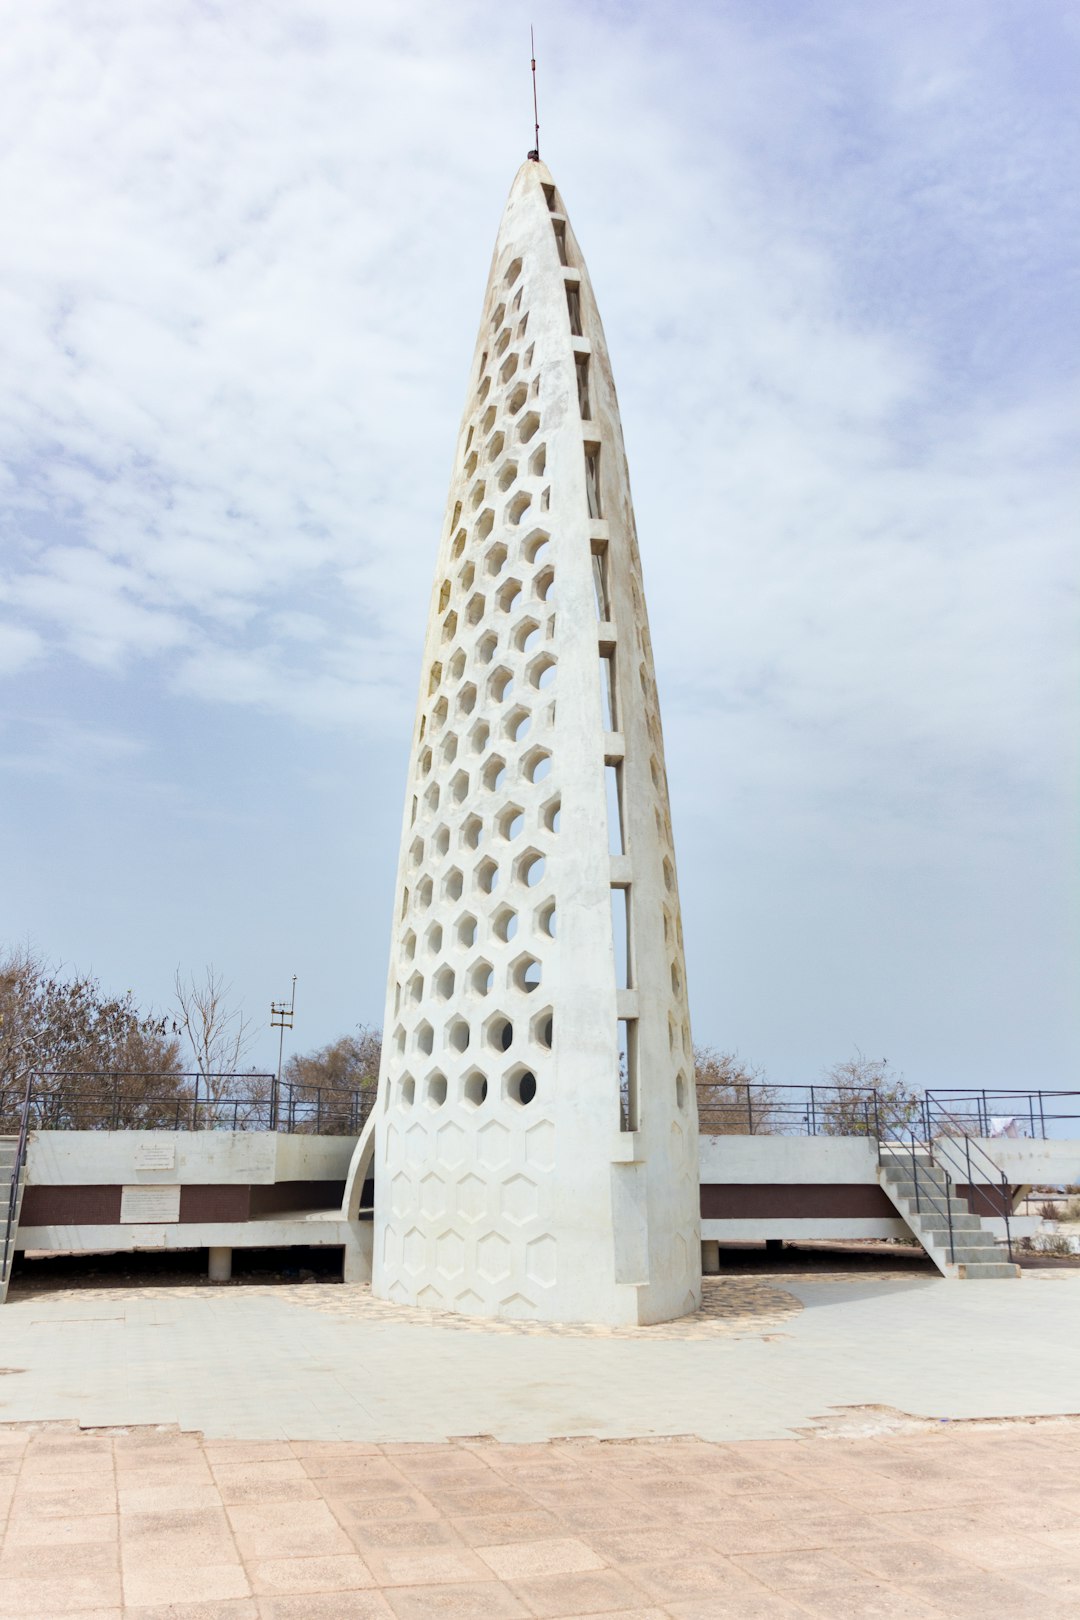 Travel Tips and Stories of Mémorial Gorée-Almadies in Senegal